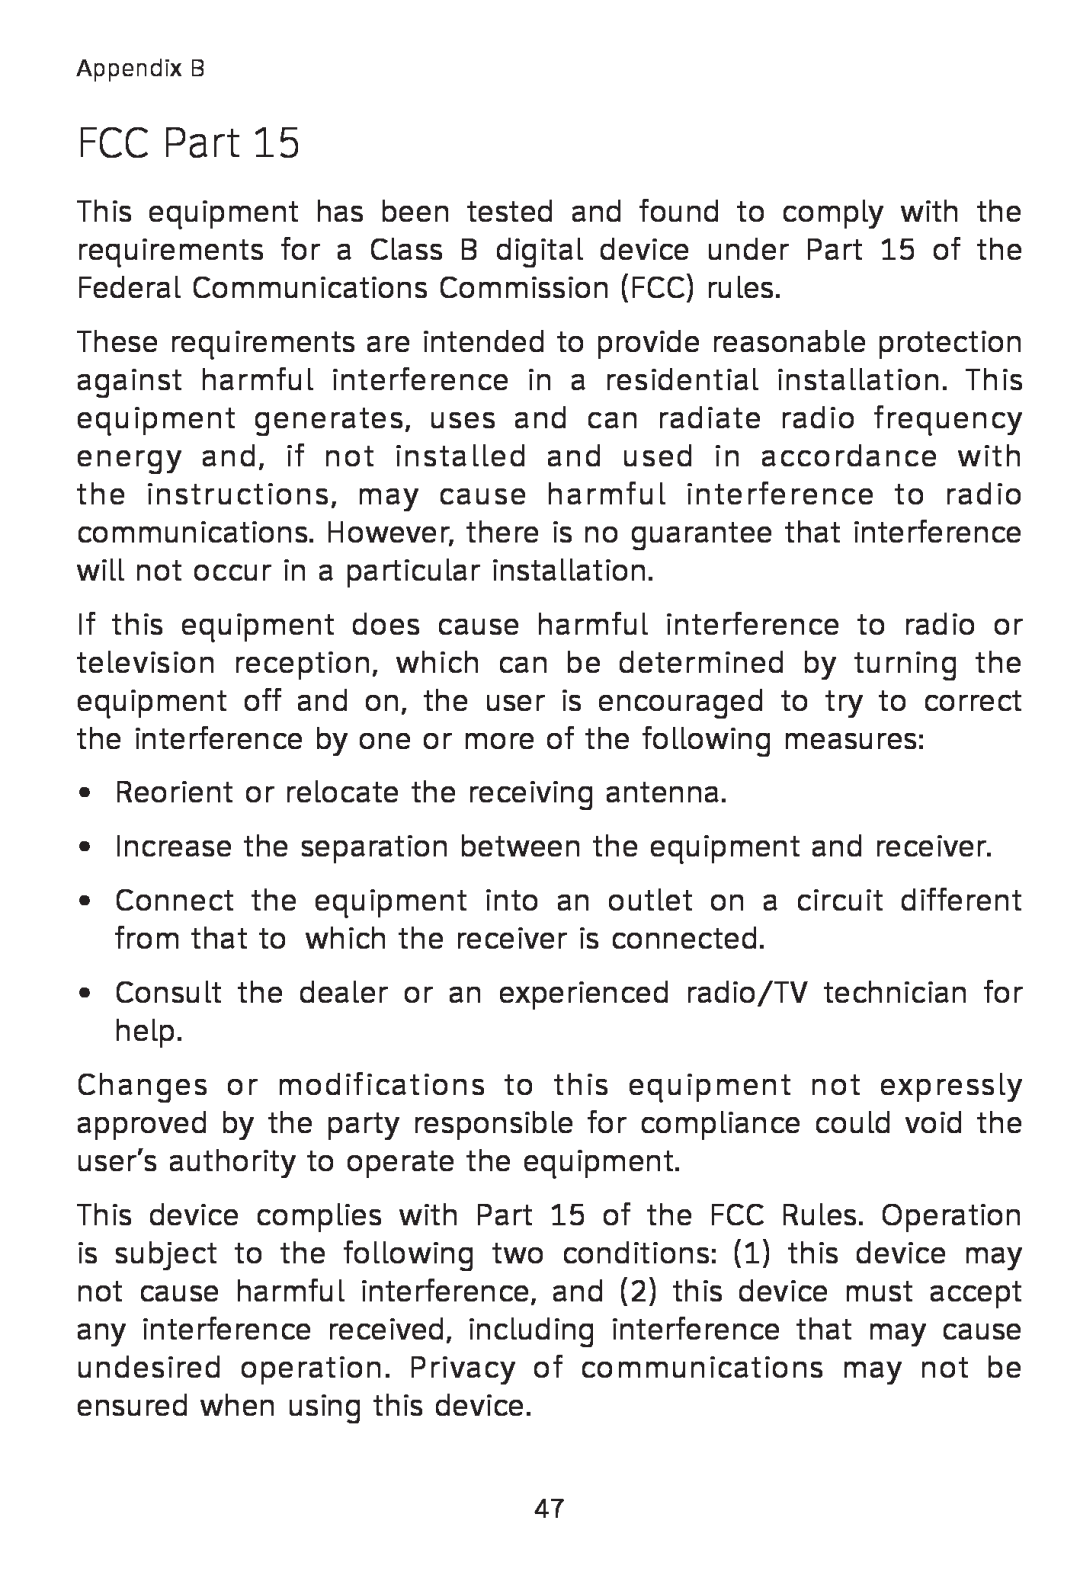 AT&T TL7600 user manual FCC Part 